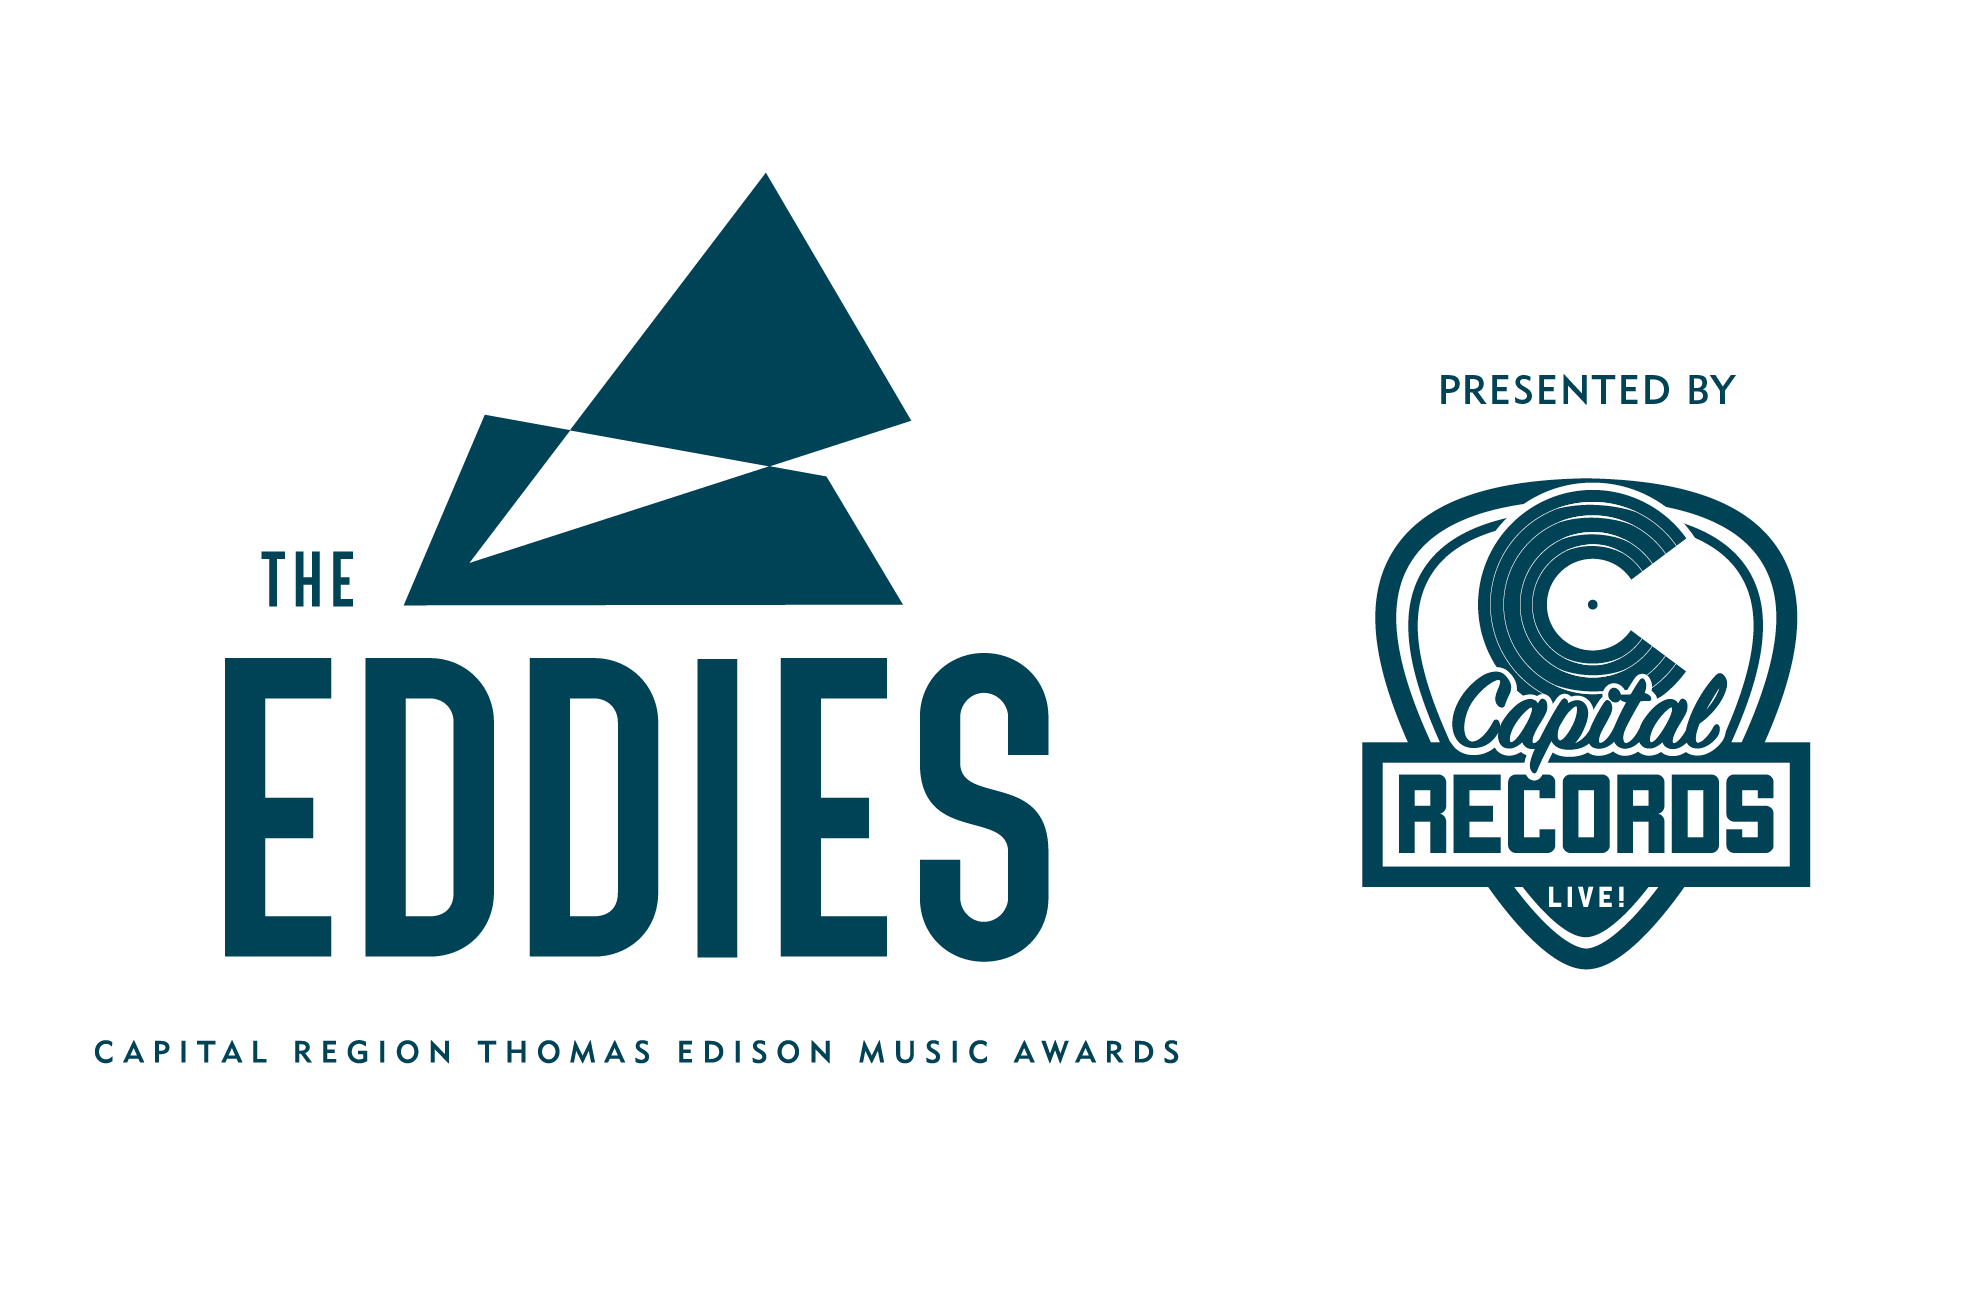 CapitalRecordsEddies-1